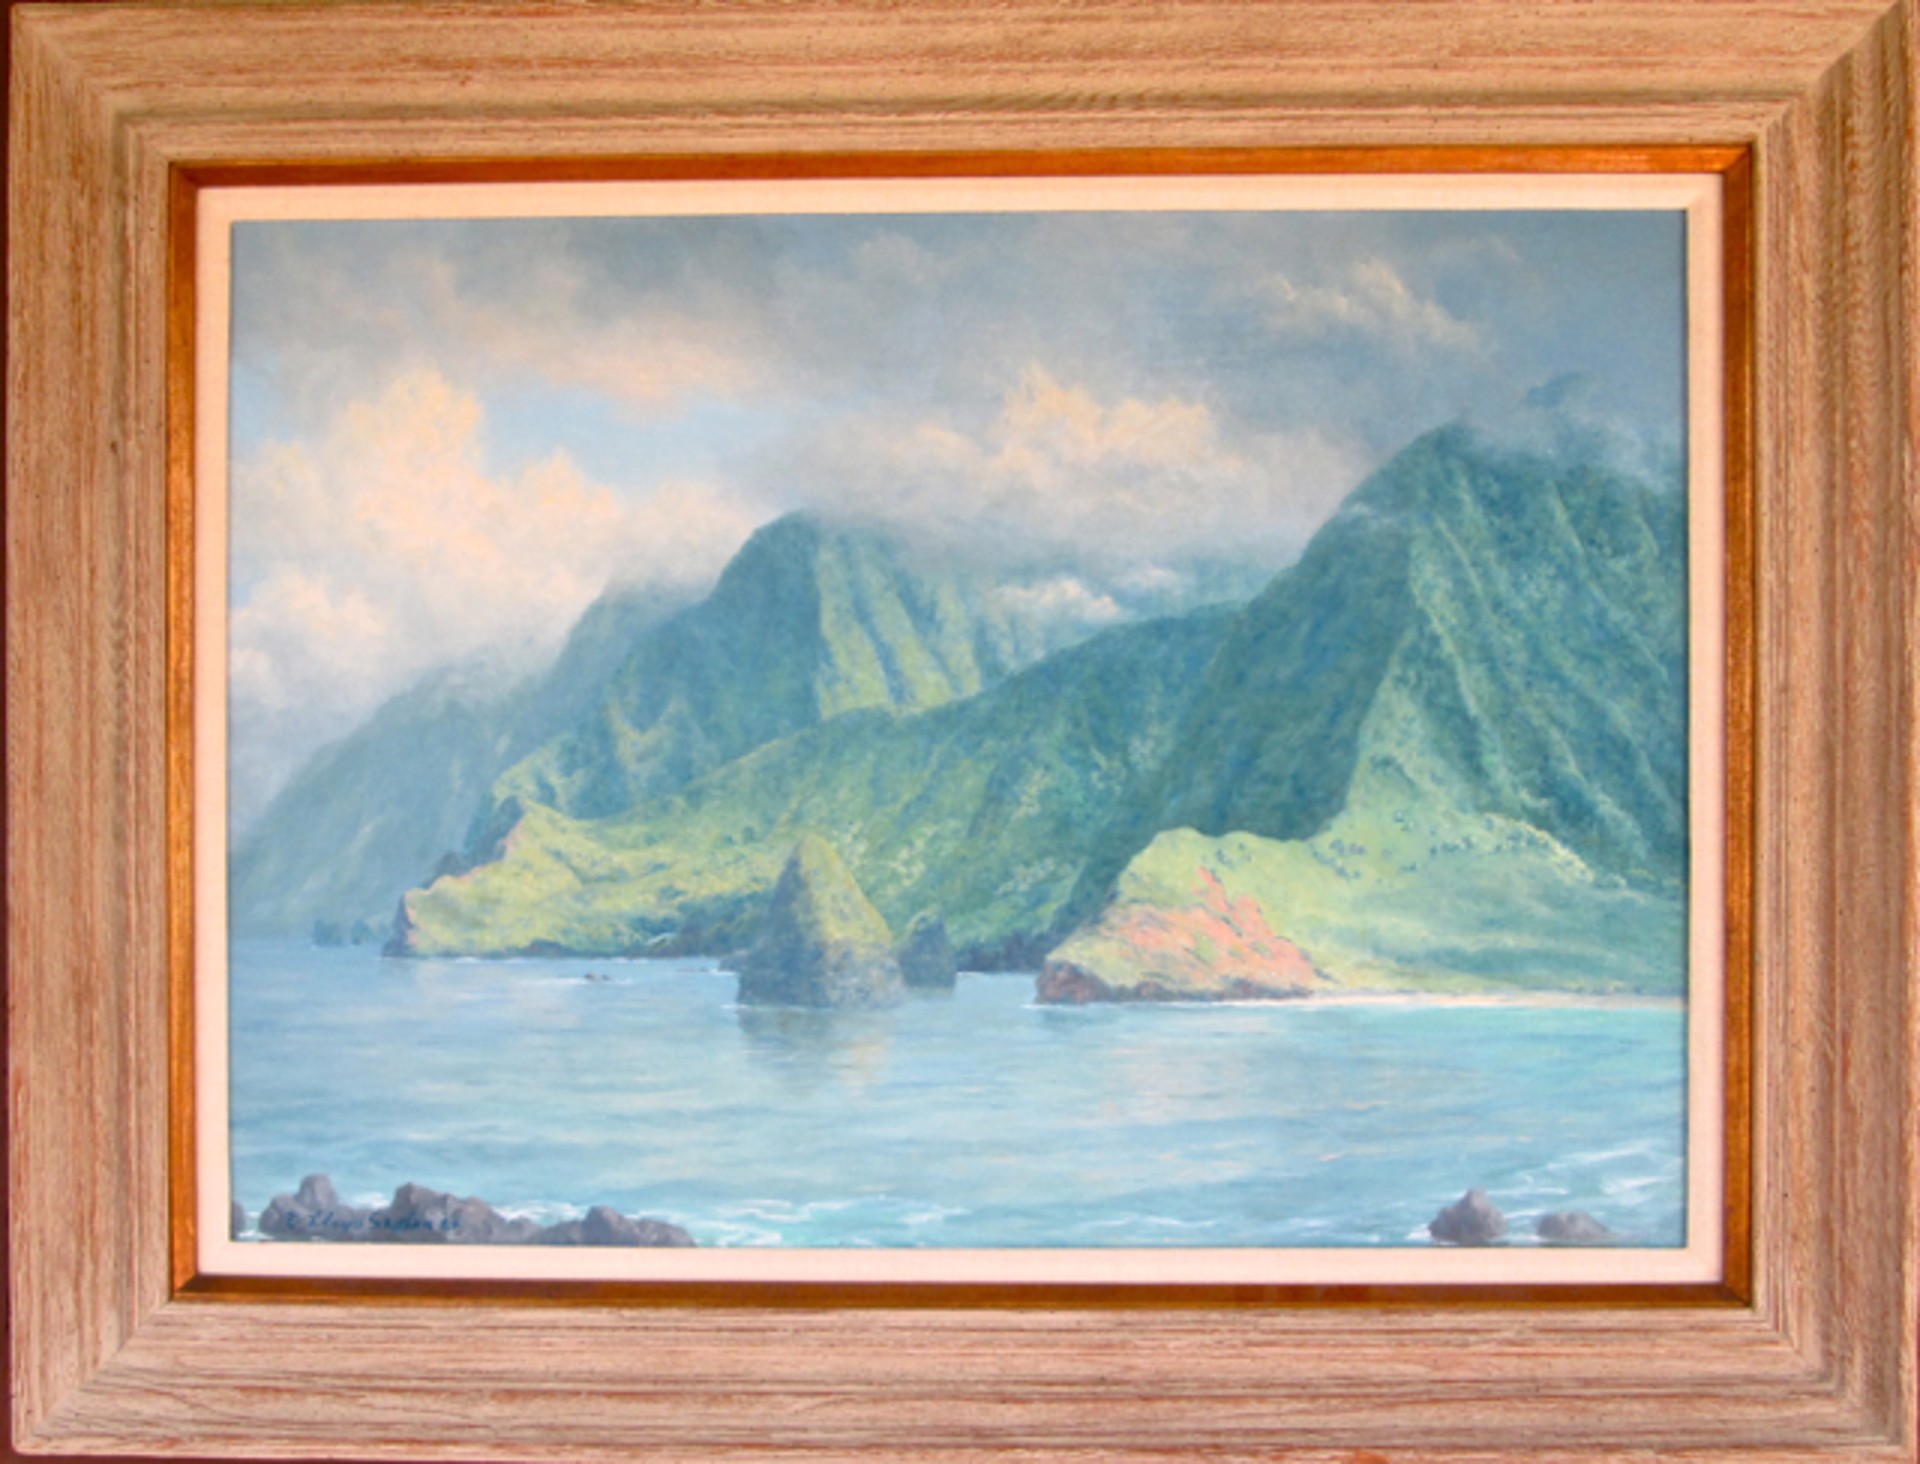 Northeast Coast of Molokai seen from Kalaupapa by Leo Lloyd Sexton